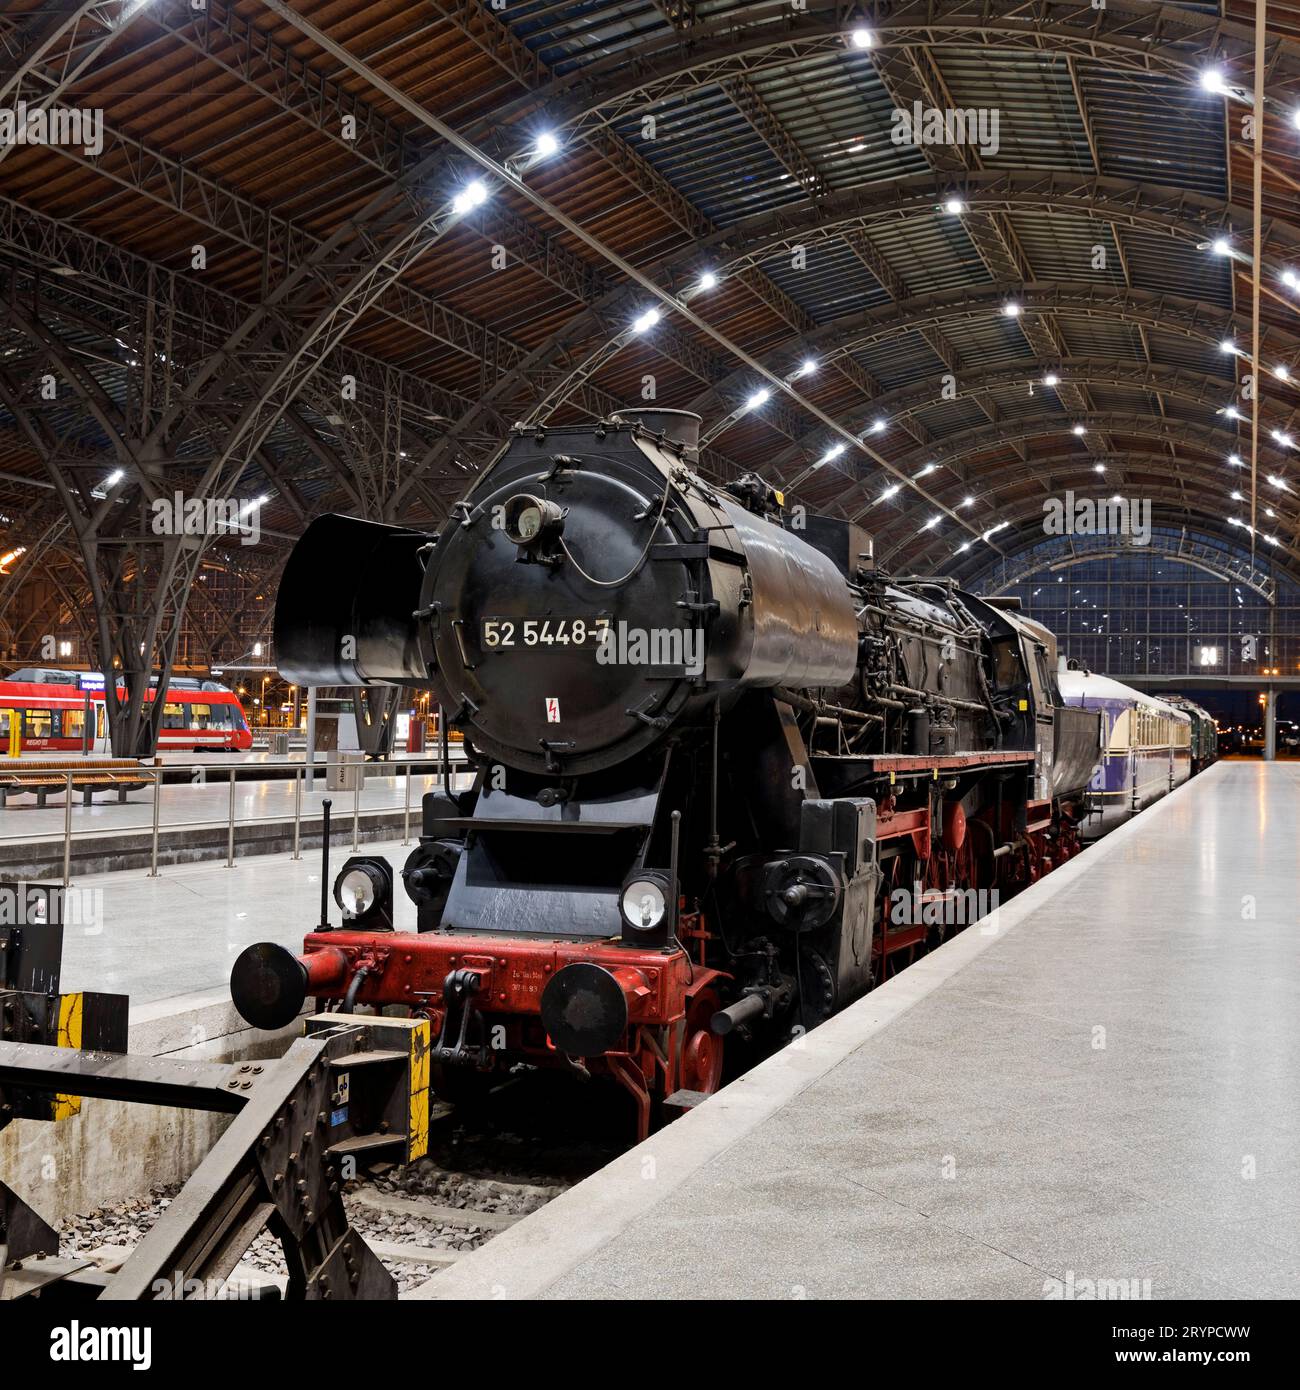 Locomotive à vapeur de classe 52 sur la voie 24 du musée dans la gare centrale de Leipzig, Saxe, Allemagne Banque D'Images